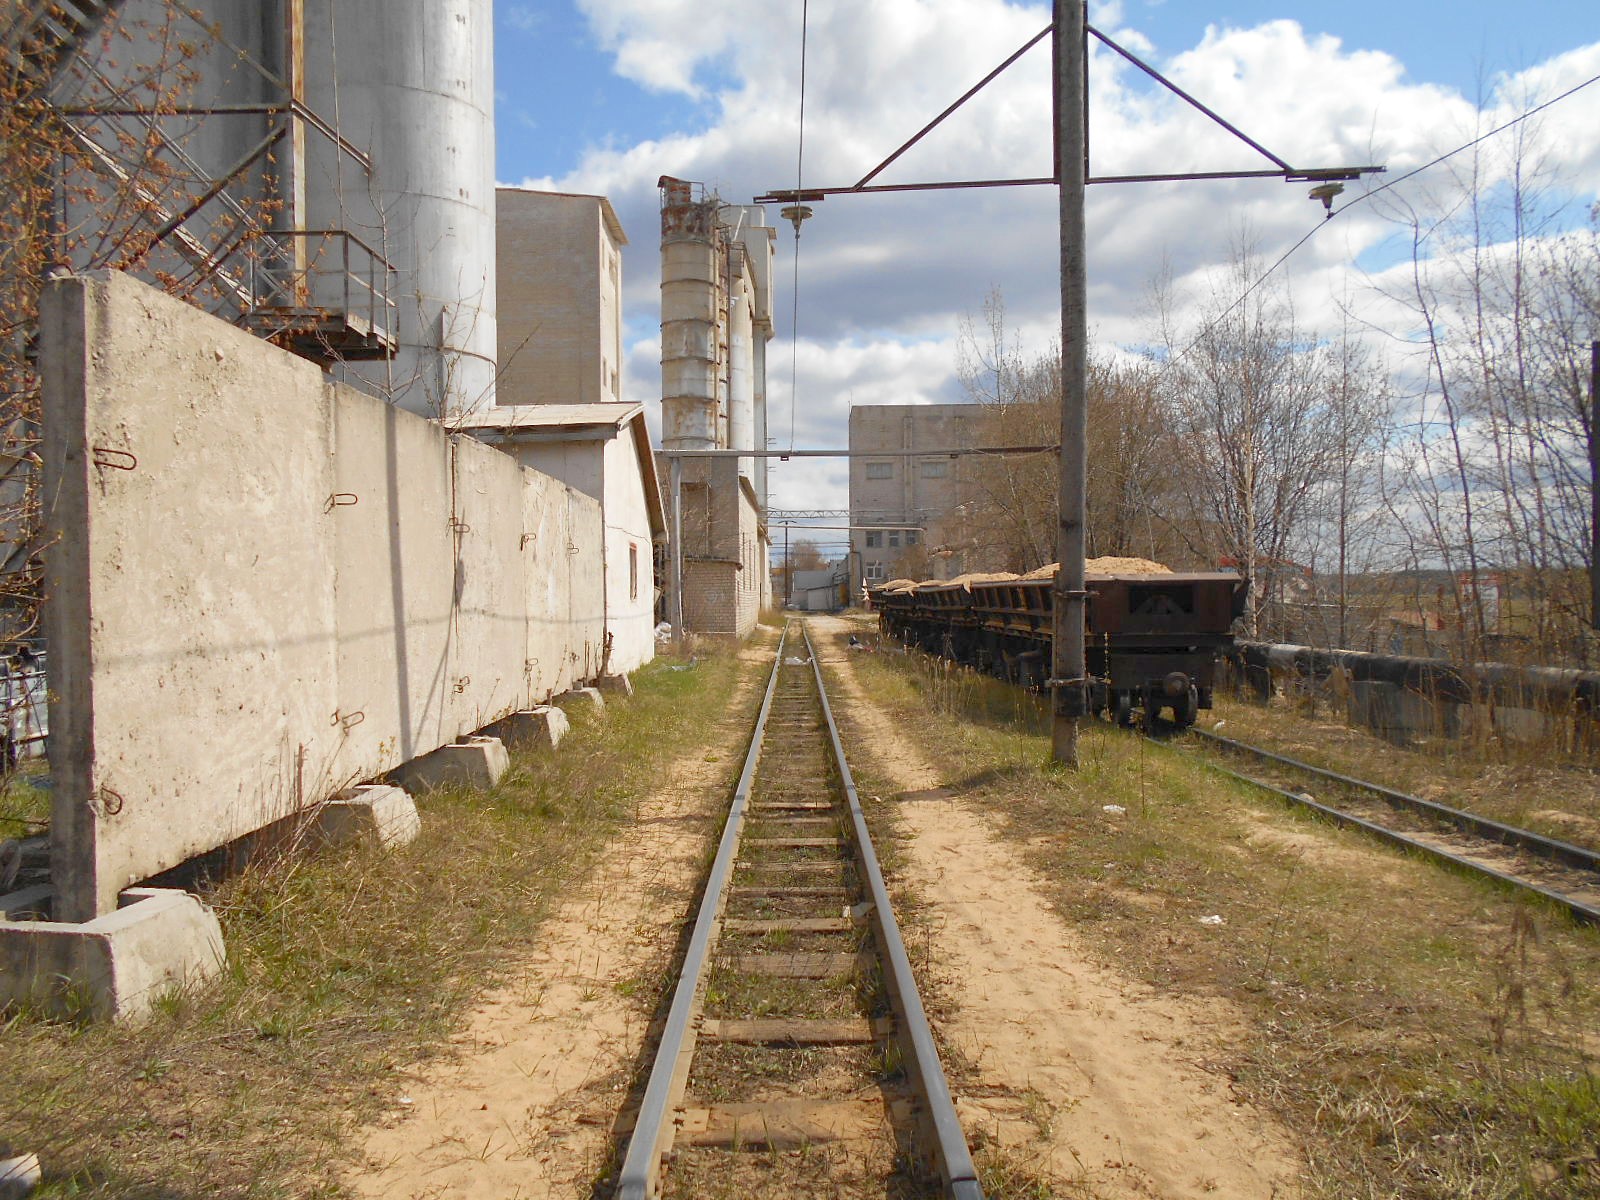 Узкоколейная железная дорога  Тверского комбината строительных материалов №2 — фотографии, сделанные в 2020 году (часть 1)